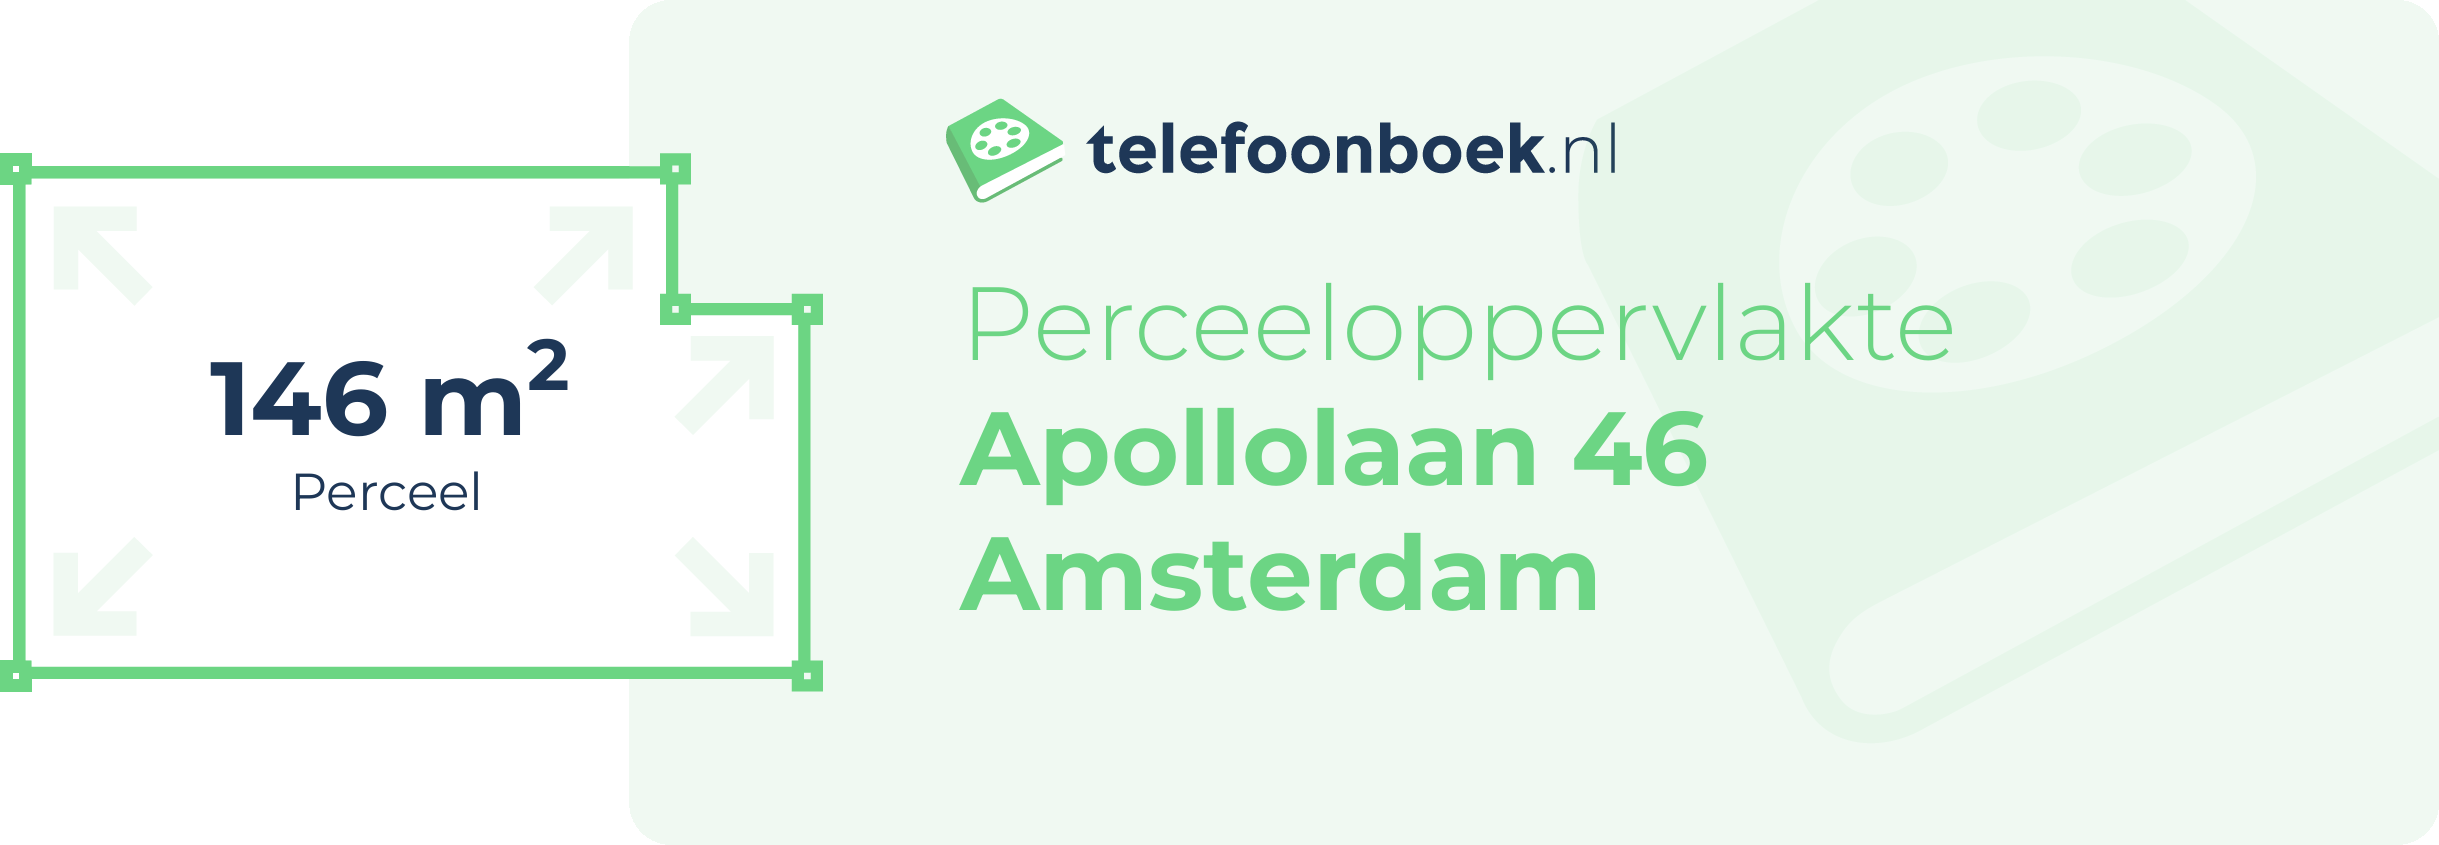 Perceeloppervlakte Apollolaan 46 Amsterdam